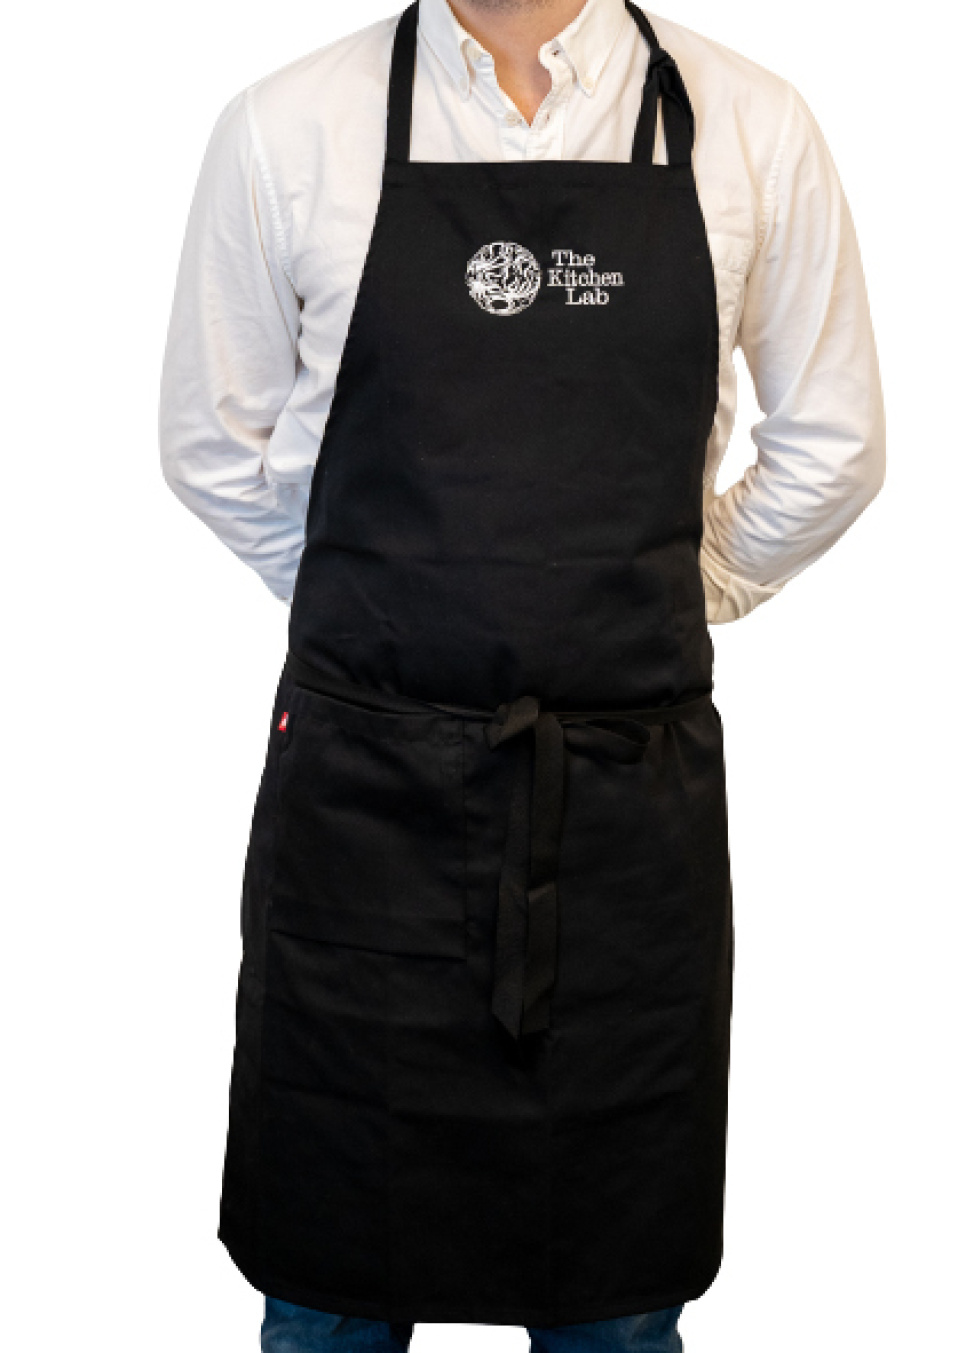 Bröstlappsförkläde med logga - KitchenLab i gruppen Matlagning / Kökstextilier / Förkläden hos KitchenLab (1317-27450)